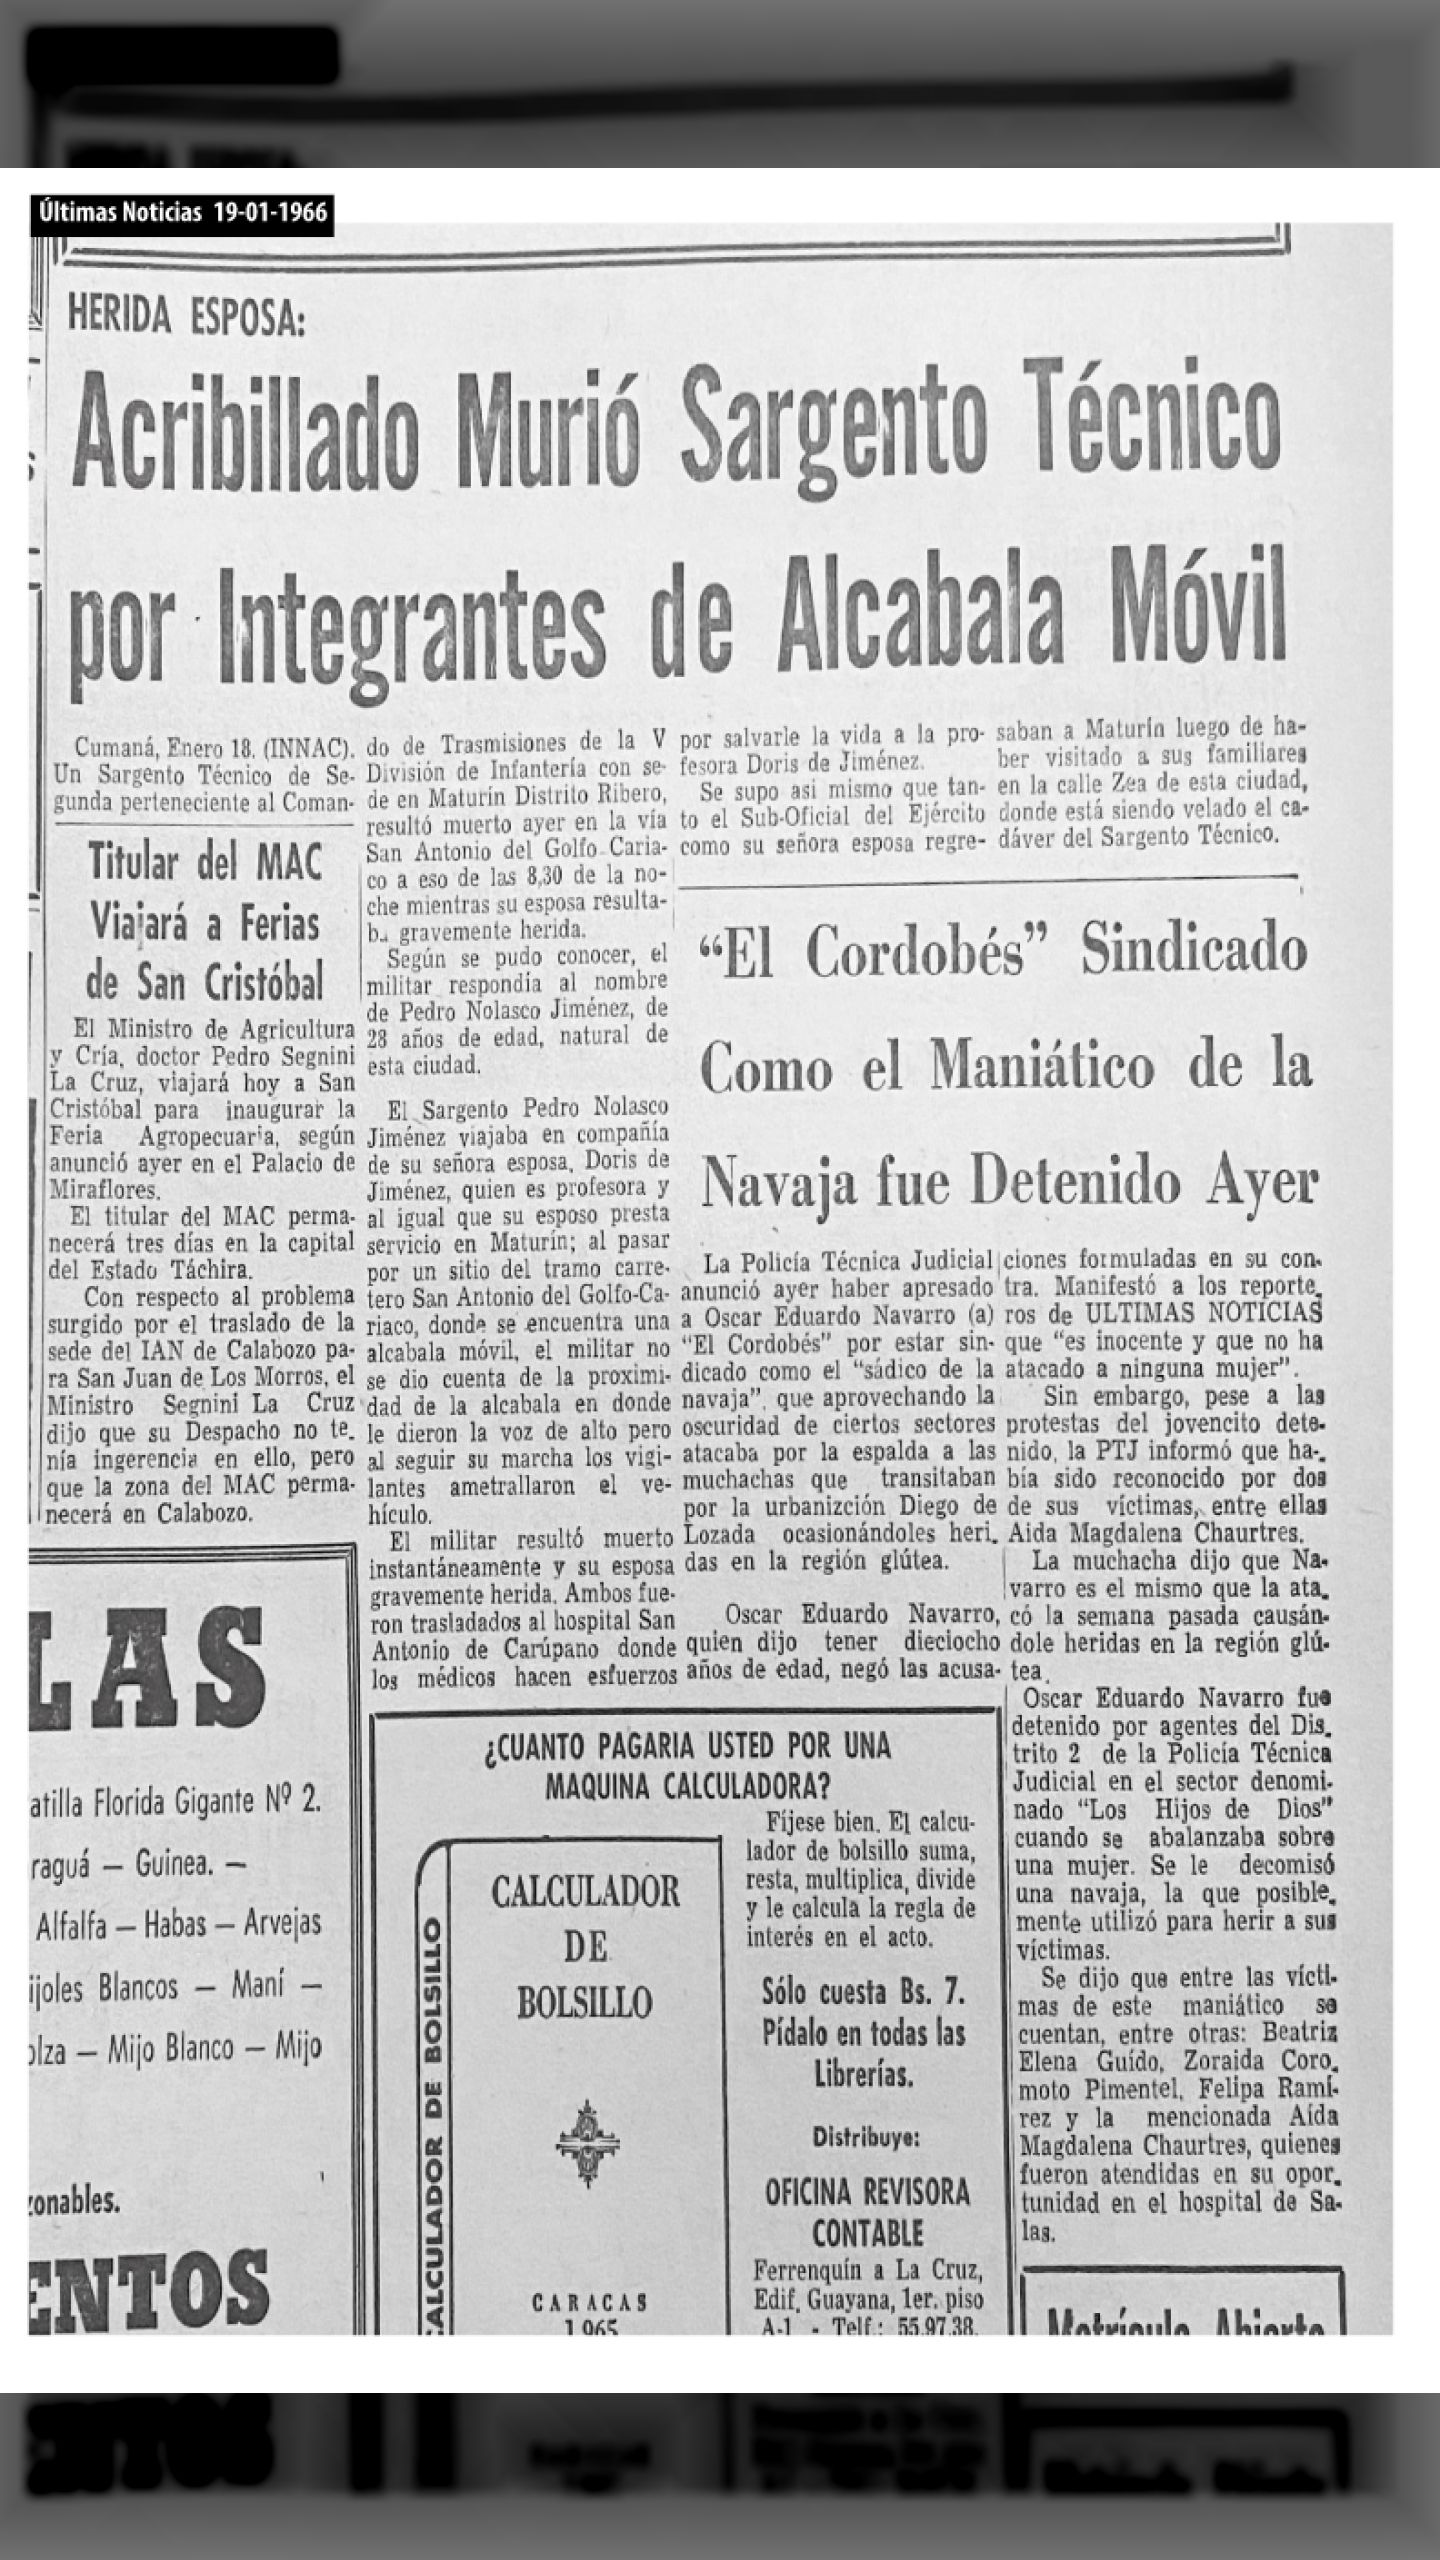 ACRIBILLADO SARGENTO TÉCNICO POR INTEGRANTES DE ALCABALA MÓVIL (Últimas Noticias, 19 de enero 1966)